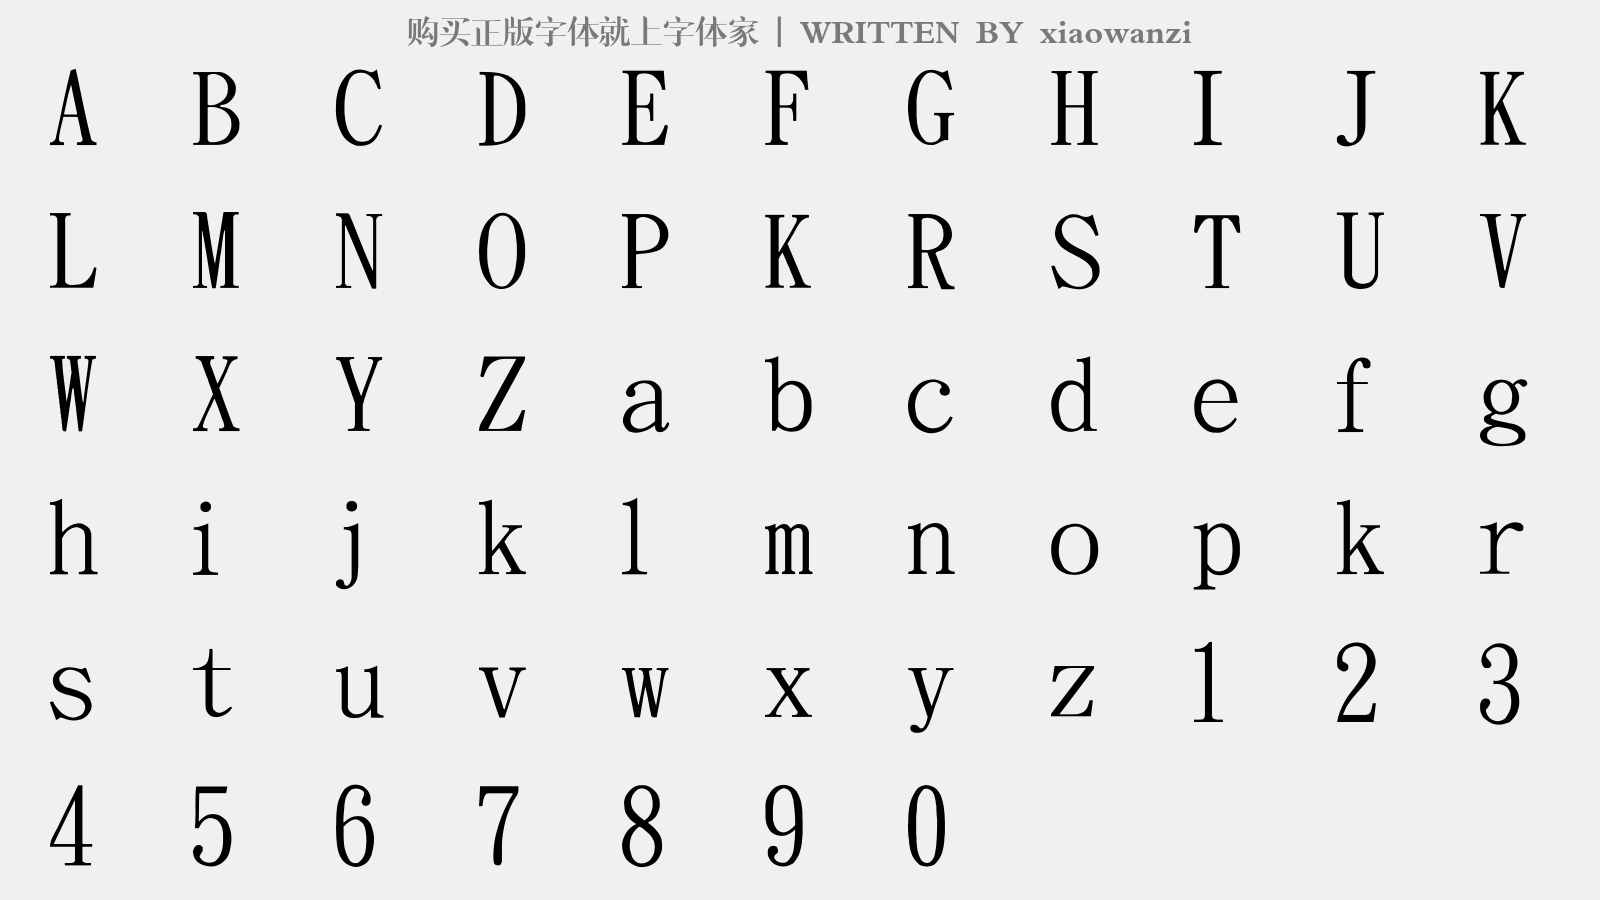 xiaowanzi - 大写字母/小写字母/数字